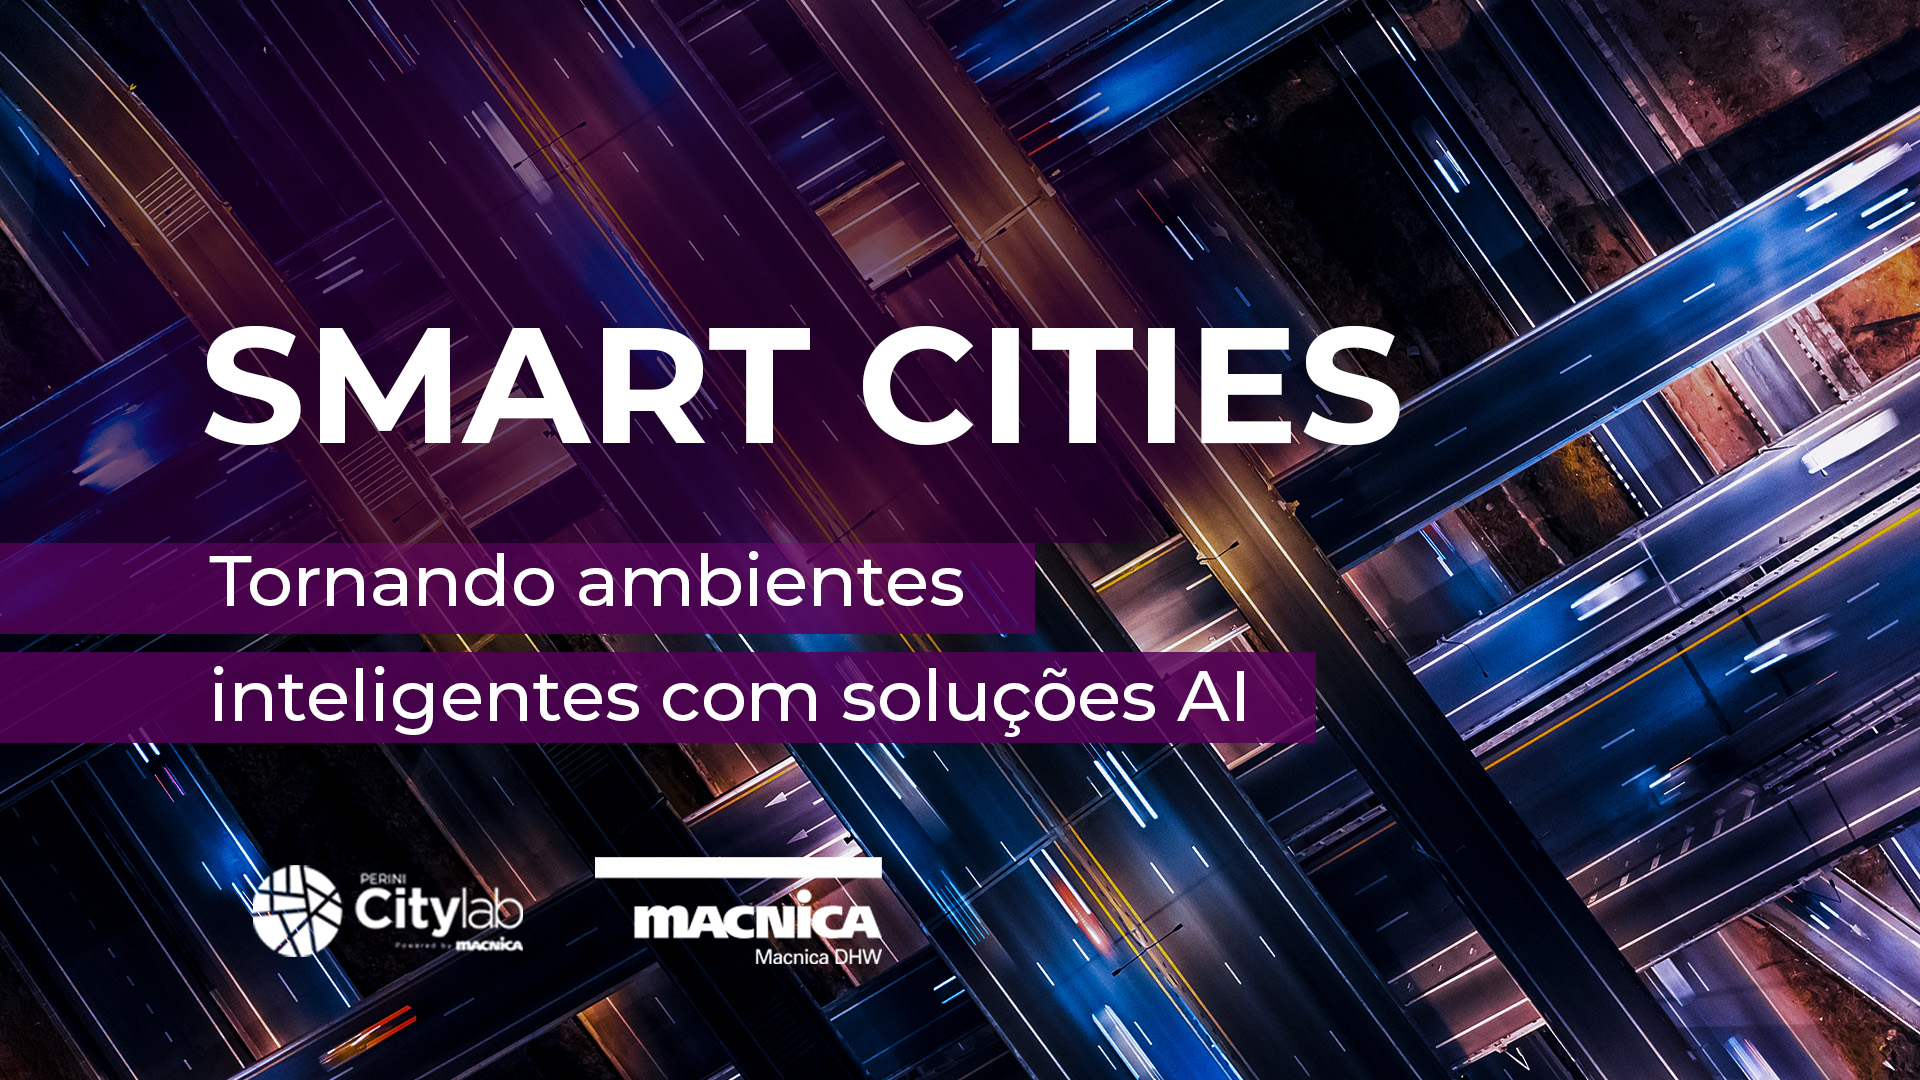 Smart Cities: Tornando ambientes inteligentes com soluções AI